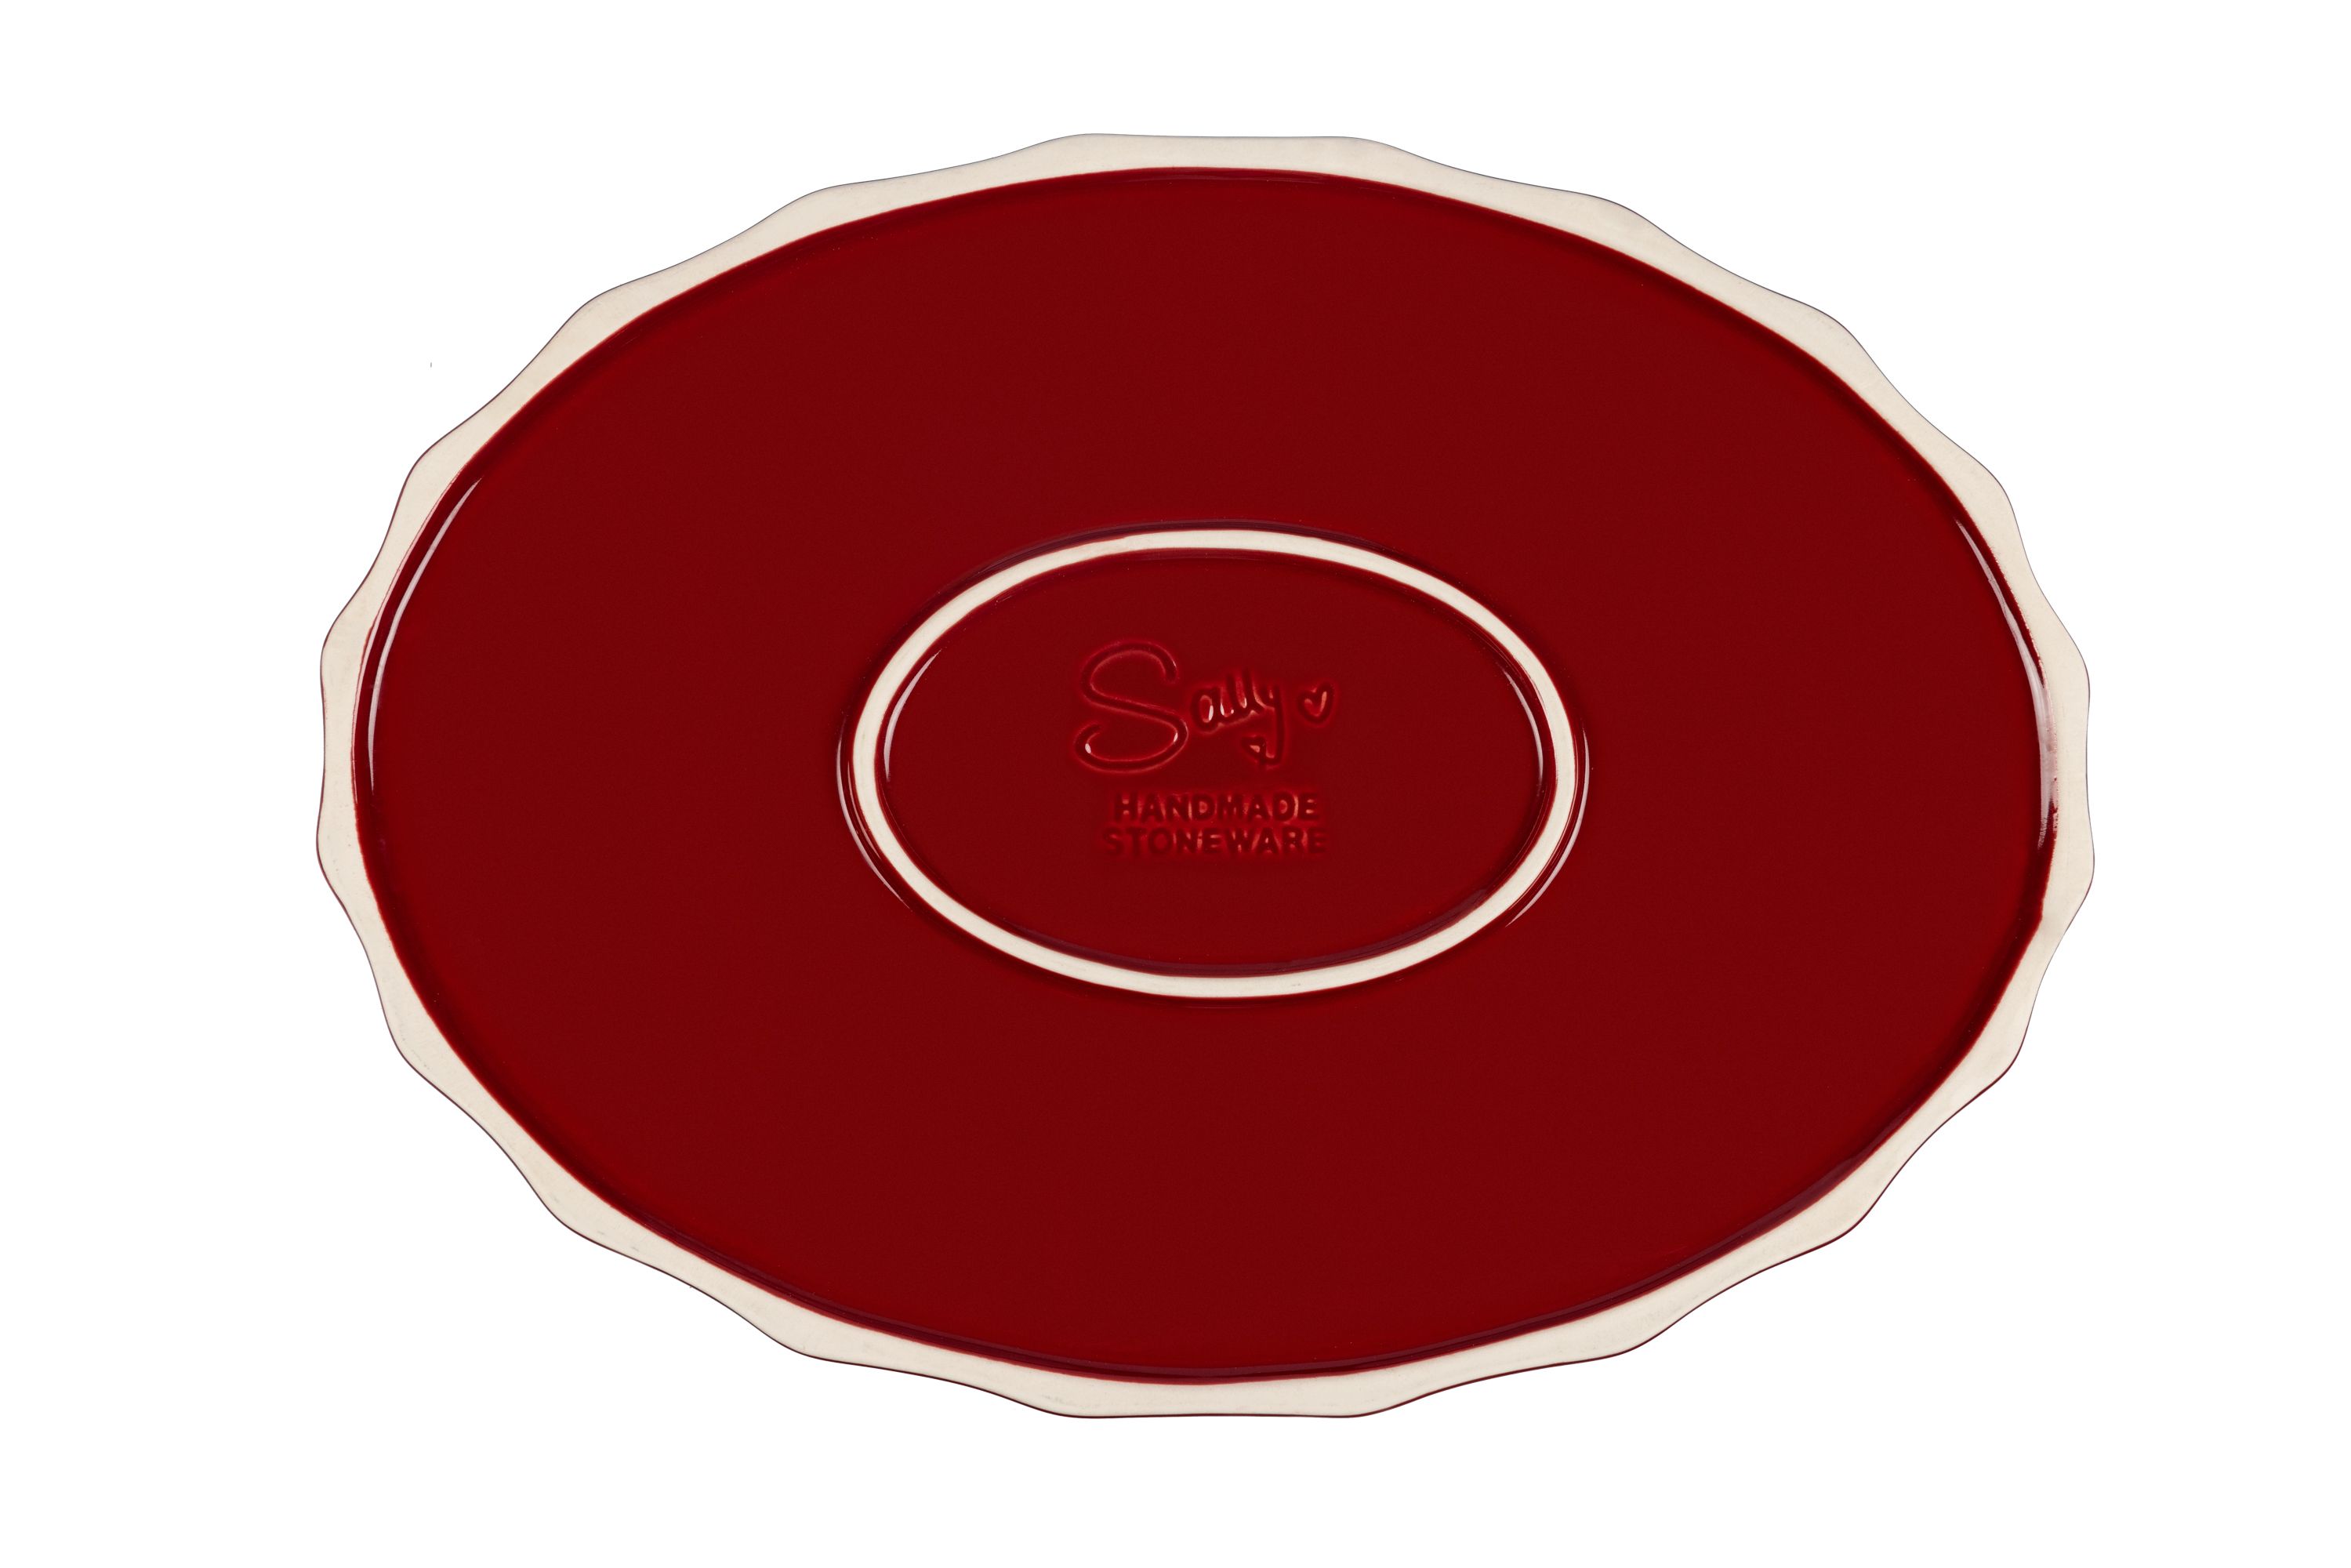 Der Boden der roten, ovalen Stoneware-Ofenform